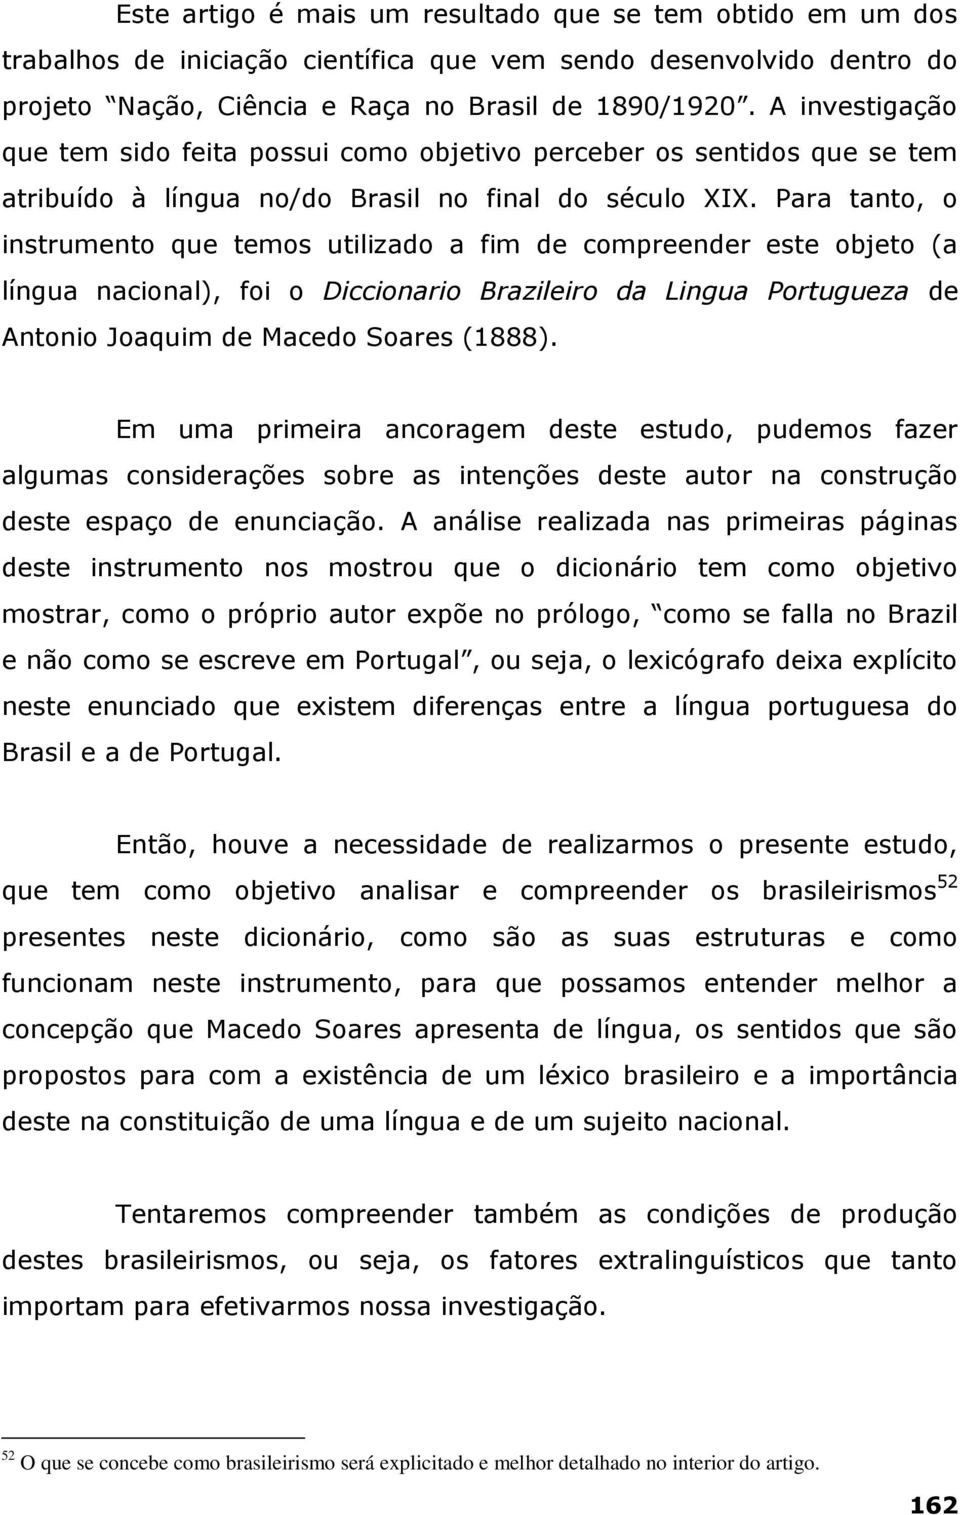 Para tanto, o instrumento que temos utilizado a fim de compreender este objeto (a língua nacional), foi o Diccionario Brazileiro da Lingua Portugueza de Antonio Joaquim de Macedo Soares (1888).